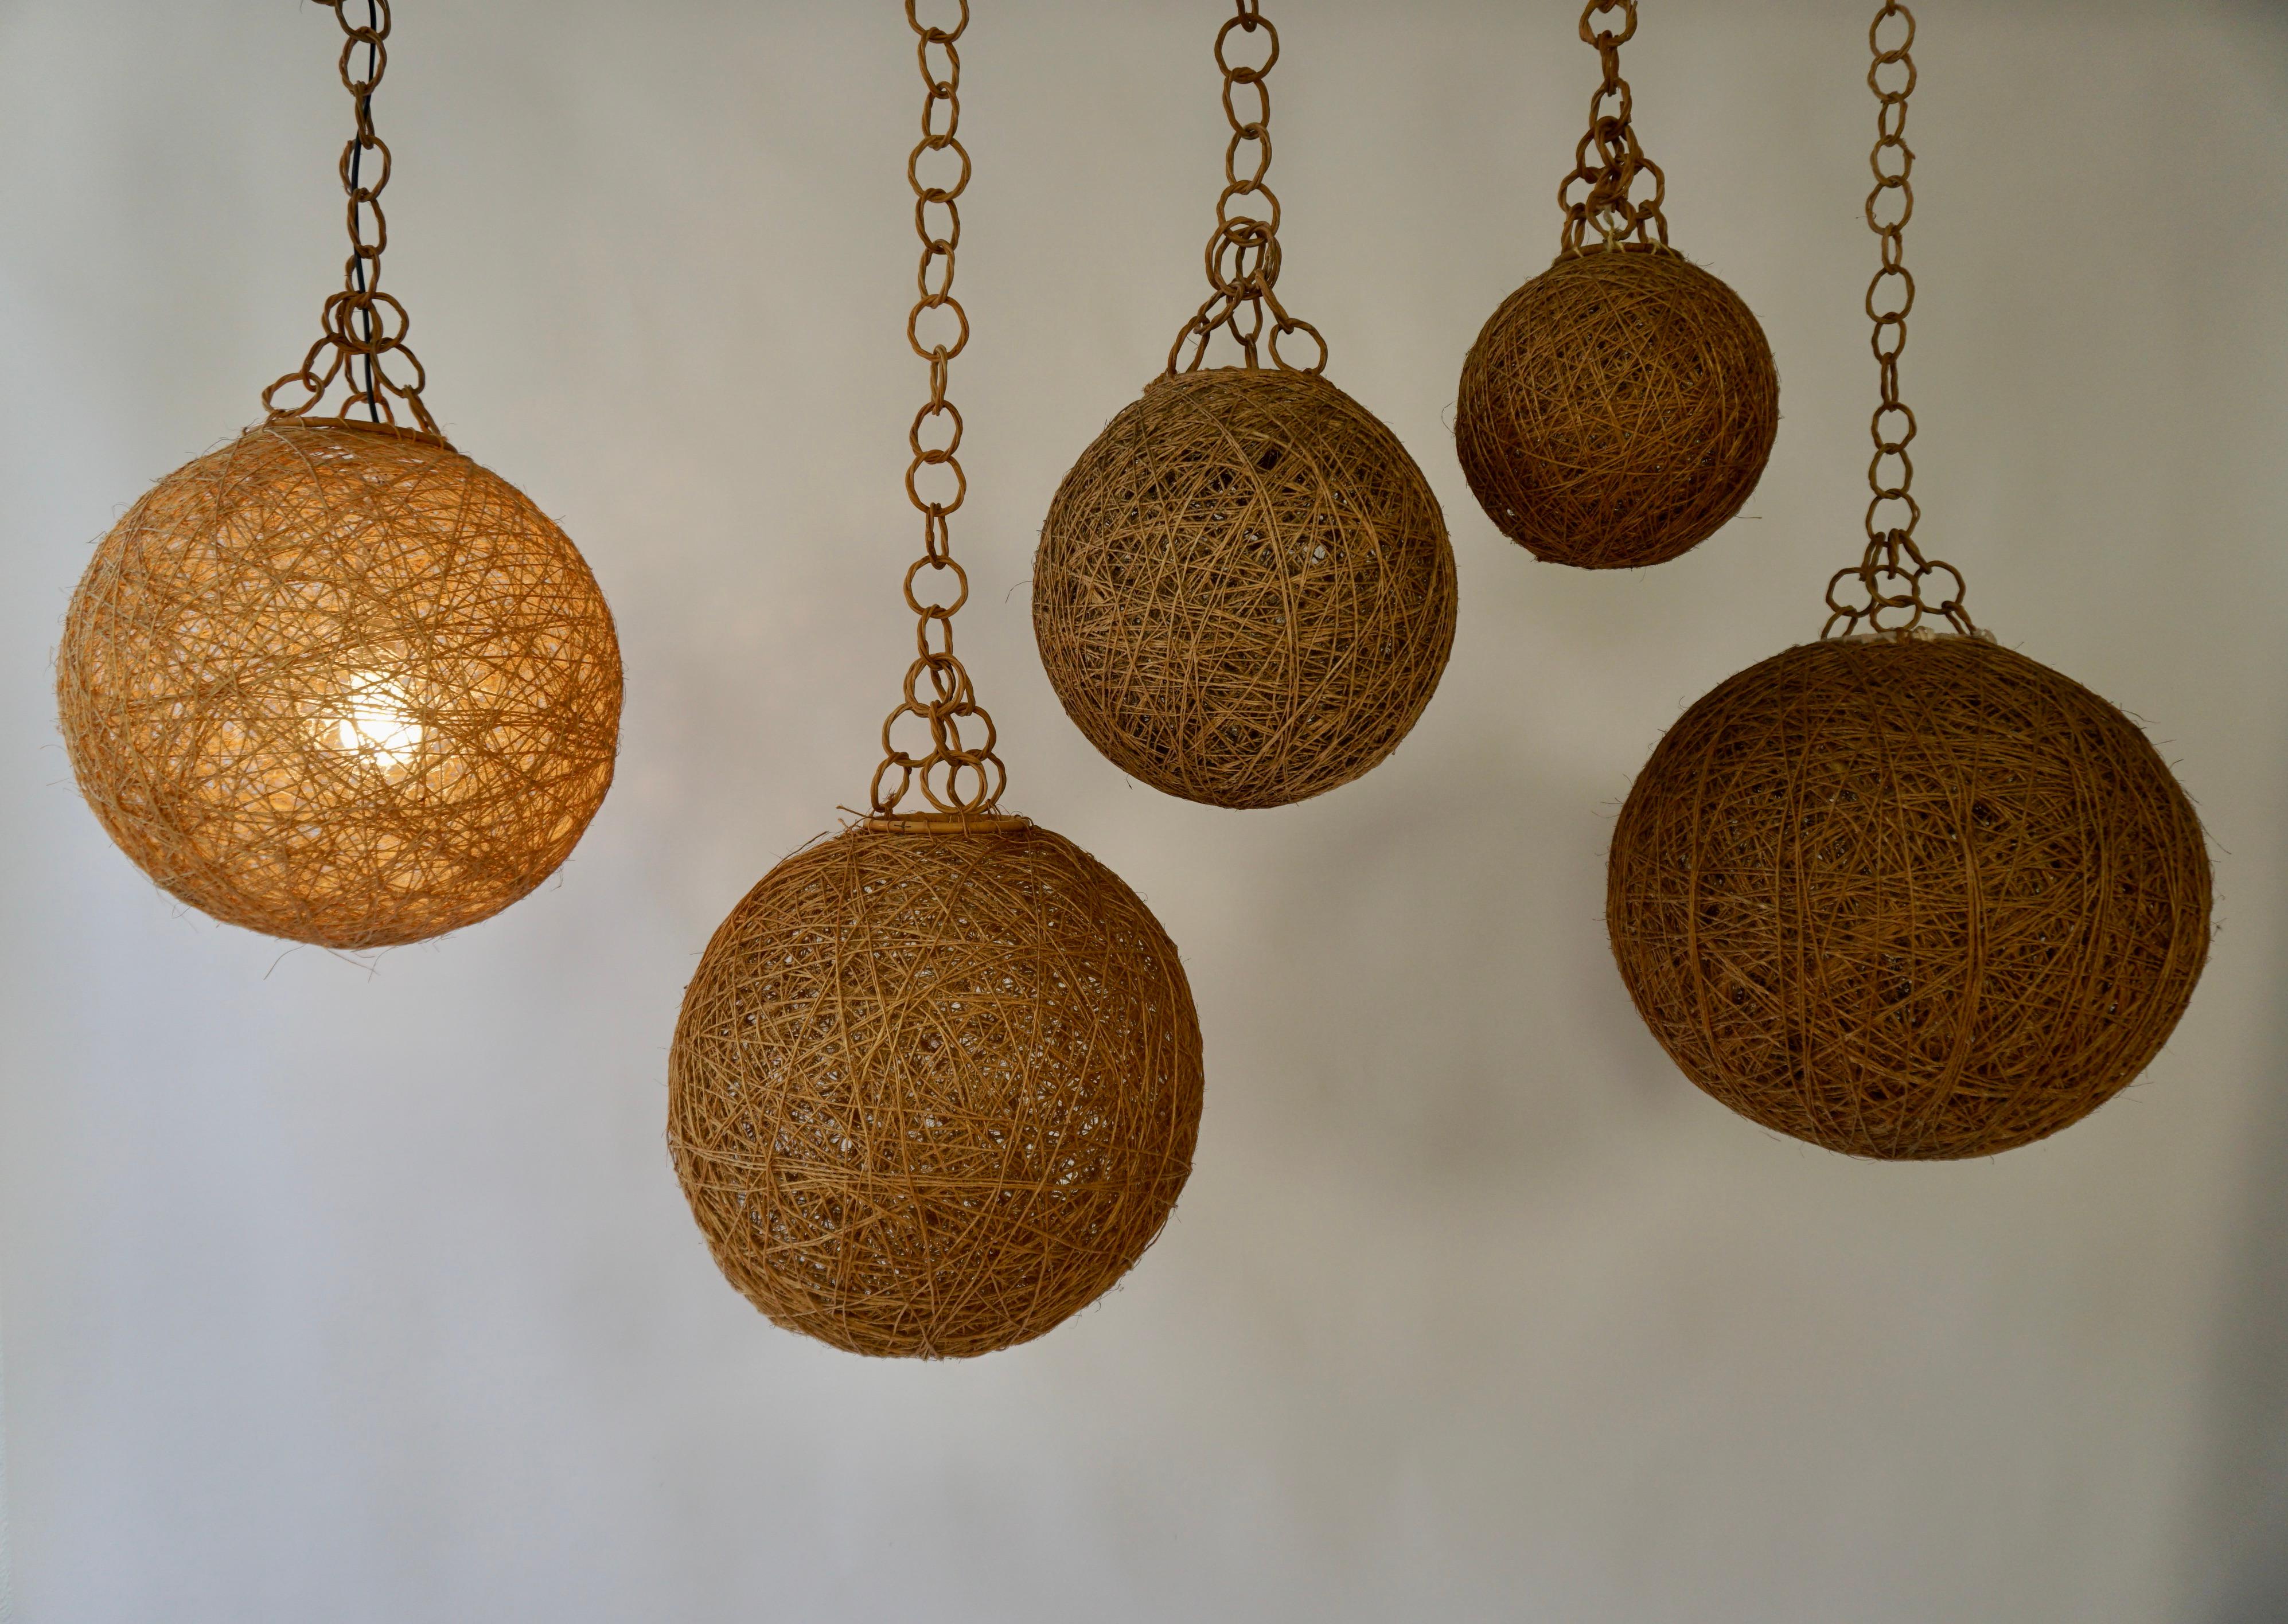 Cinq lampes suspendues danoises en corde torsadée de couleur brun crème.

Diamètre ;
2 x 15.7